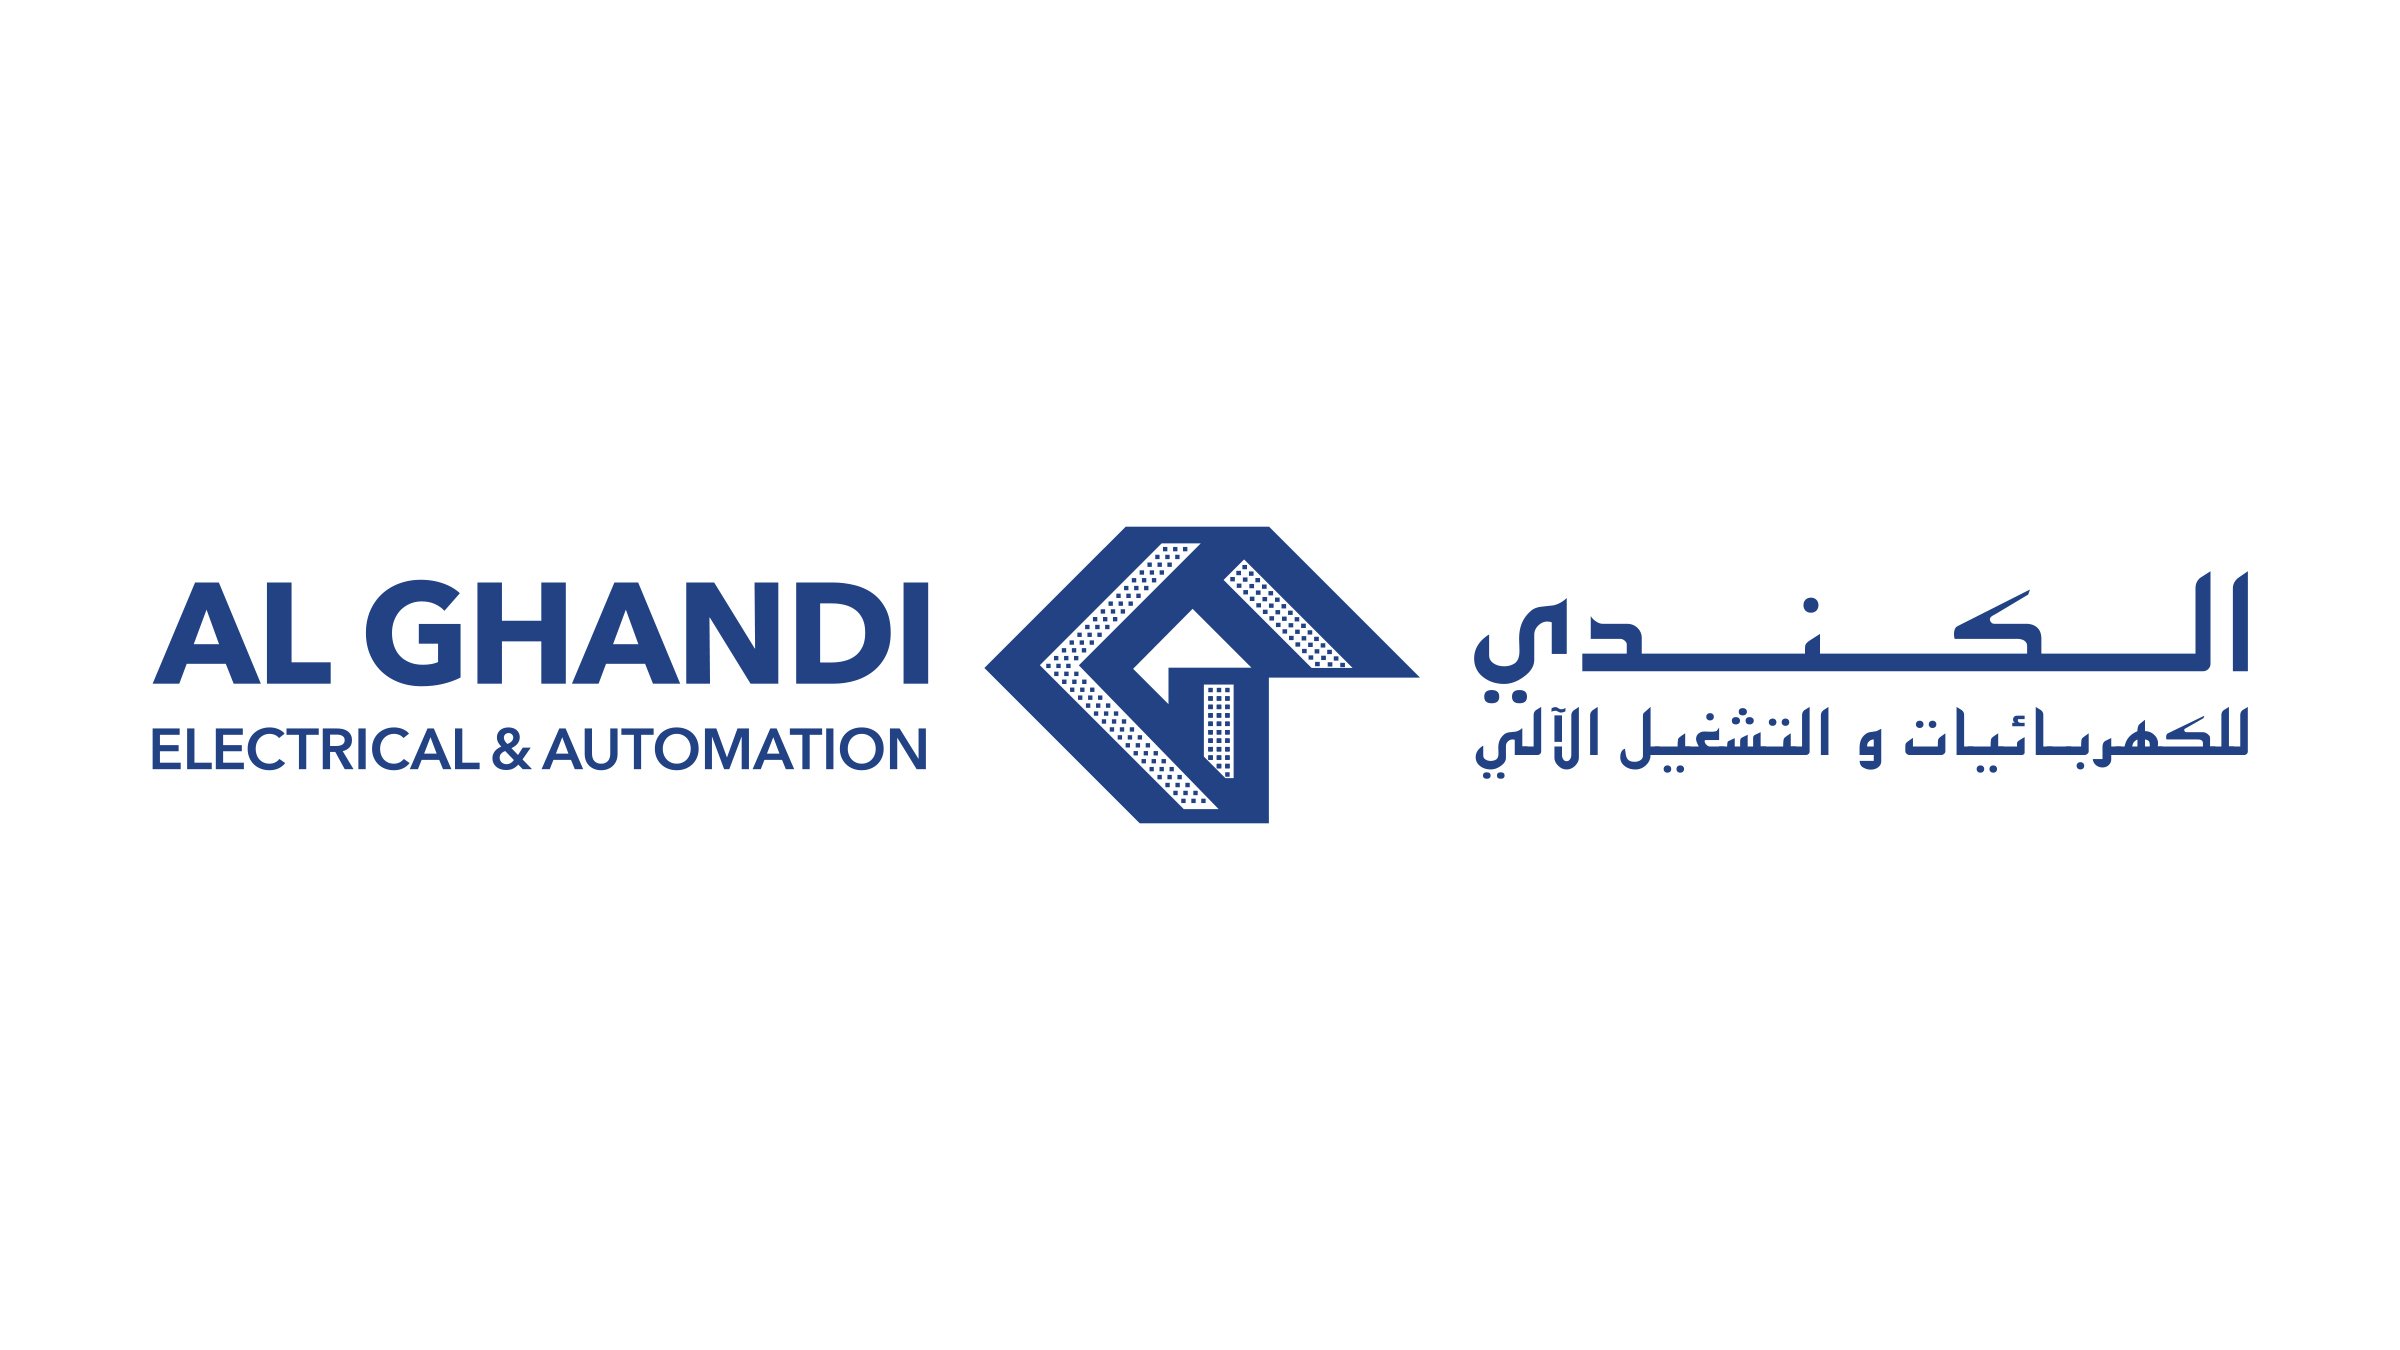 Al Ghandi Electrical & Automation logo